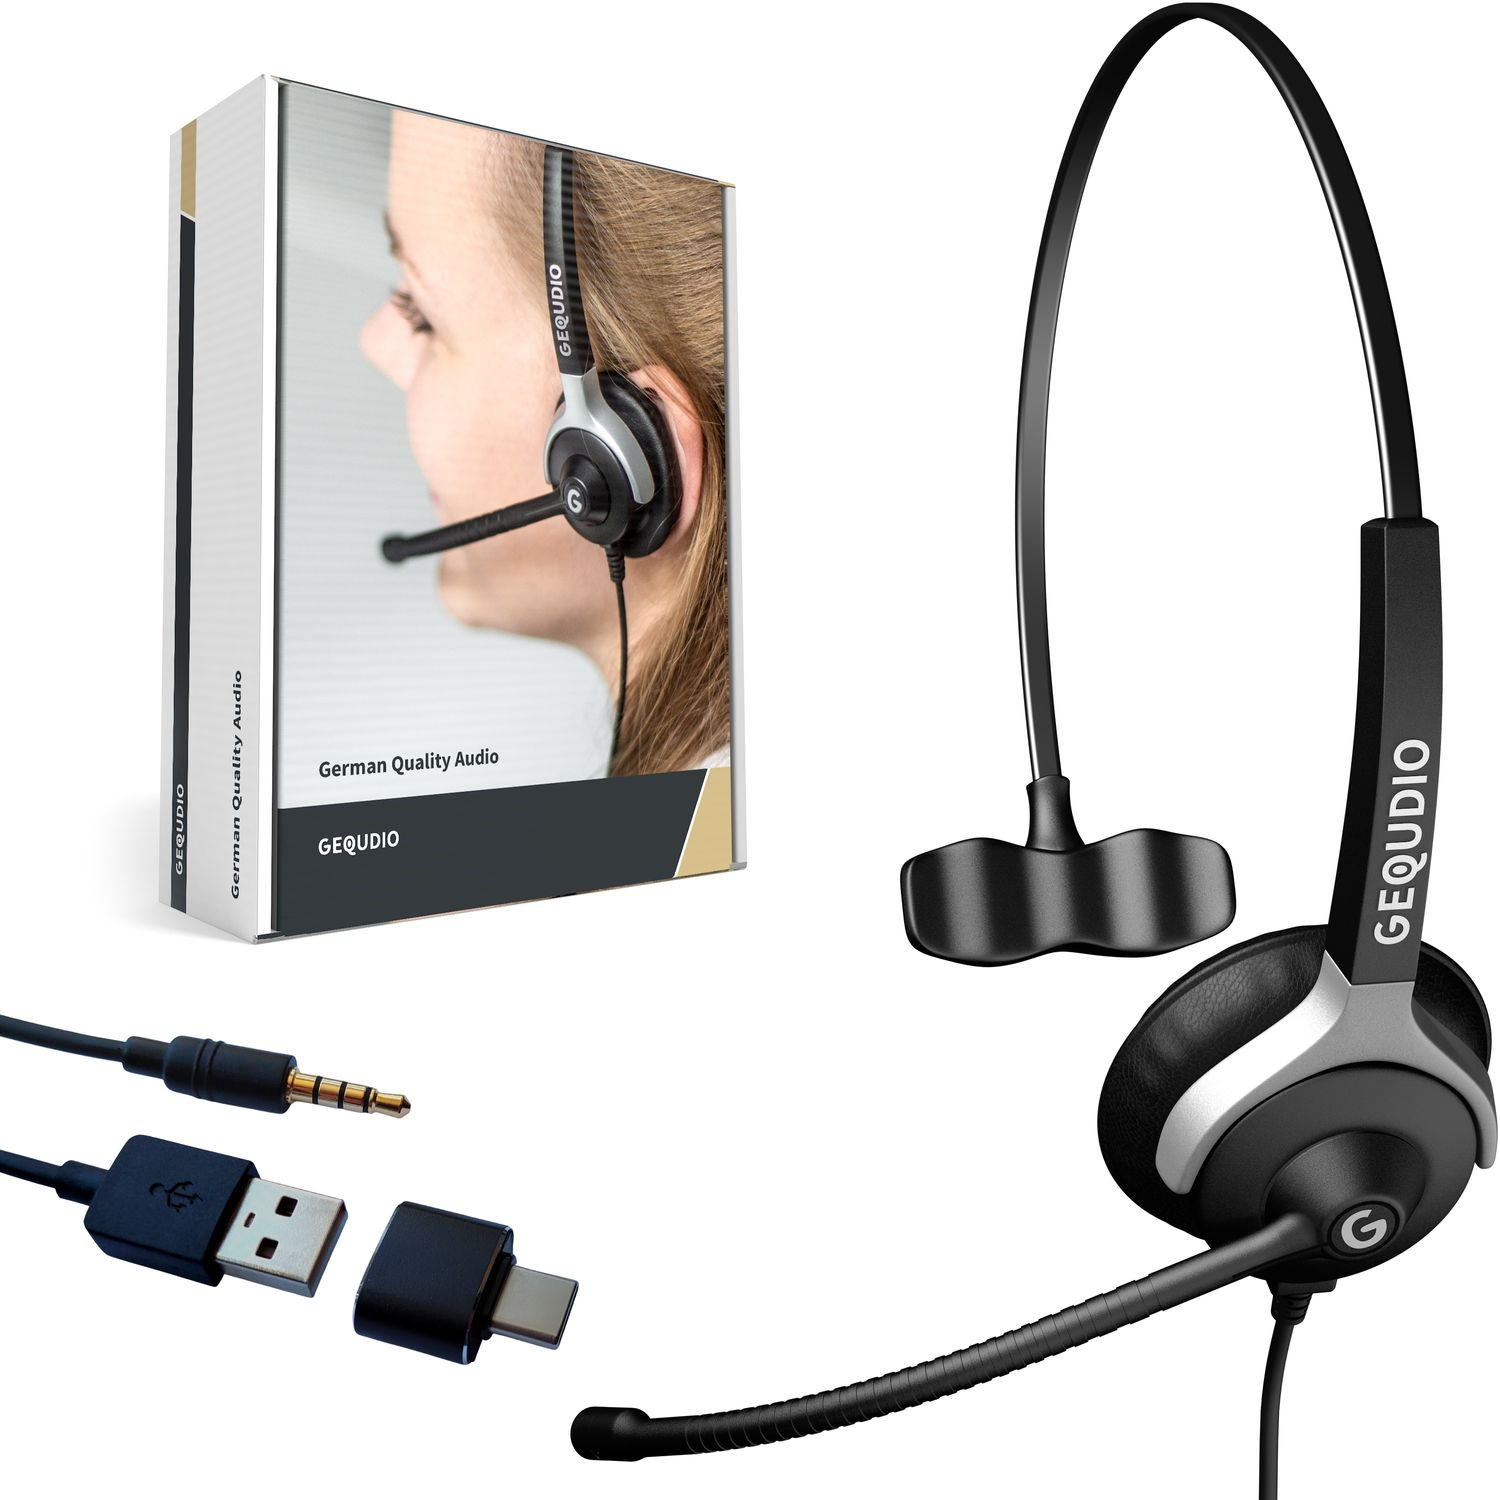 mit Schwarz GEQUDIO für USB Headset MAC, Headset PC On-ear 1-Ohr